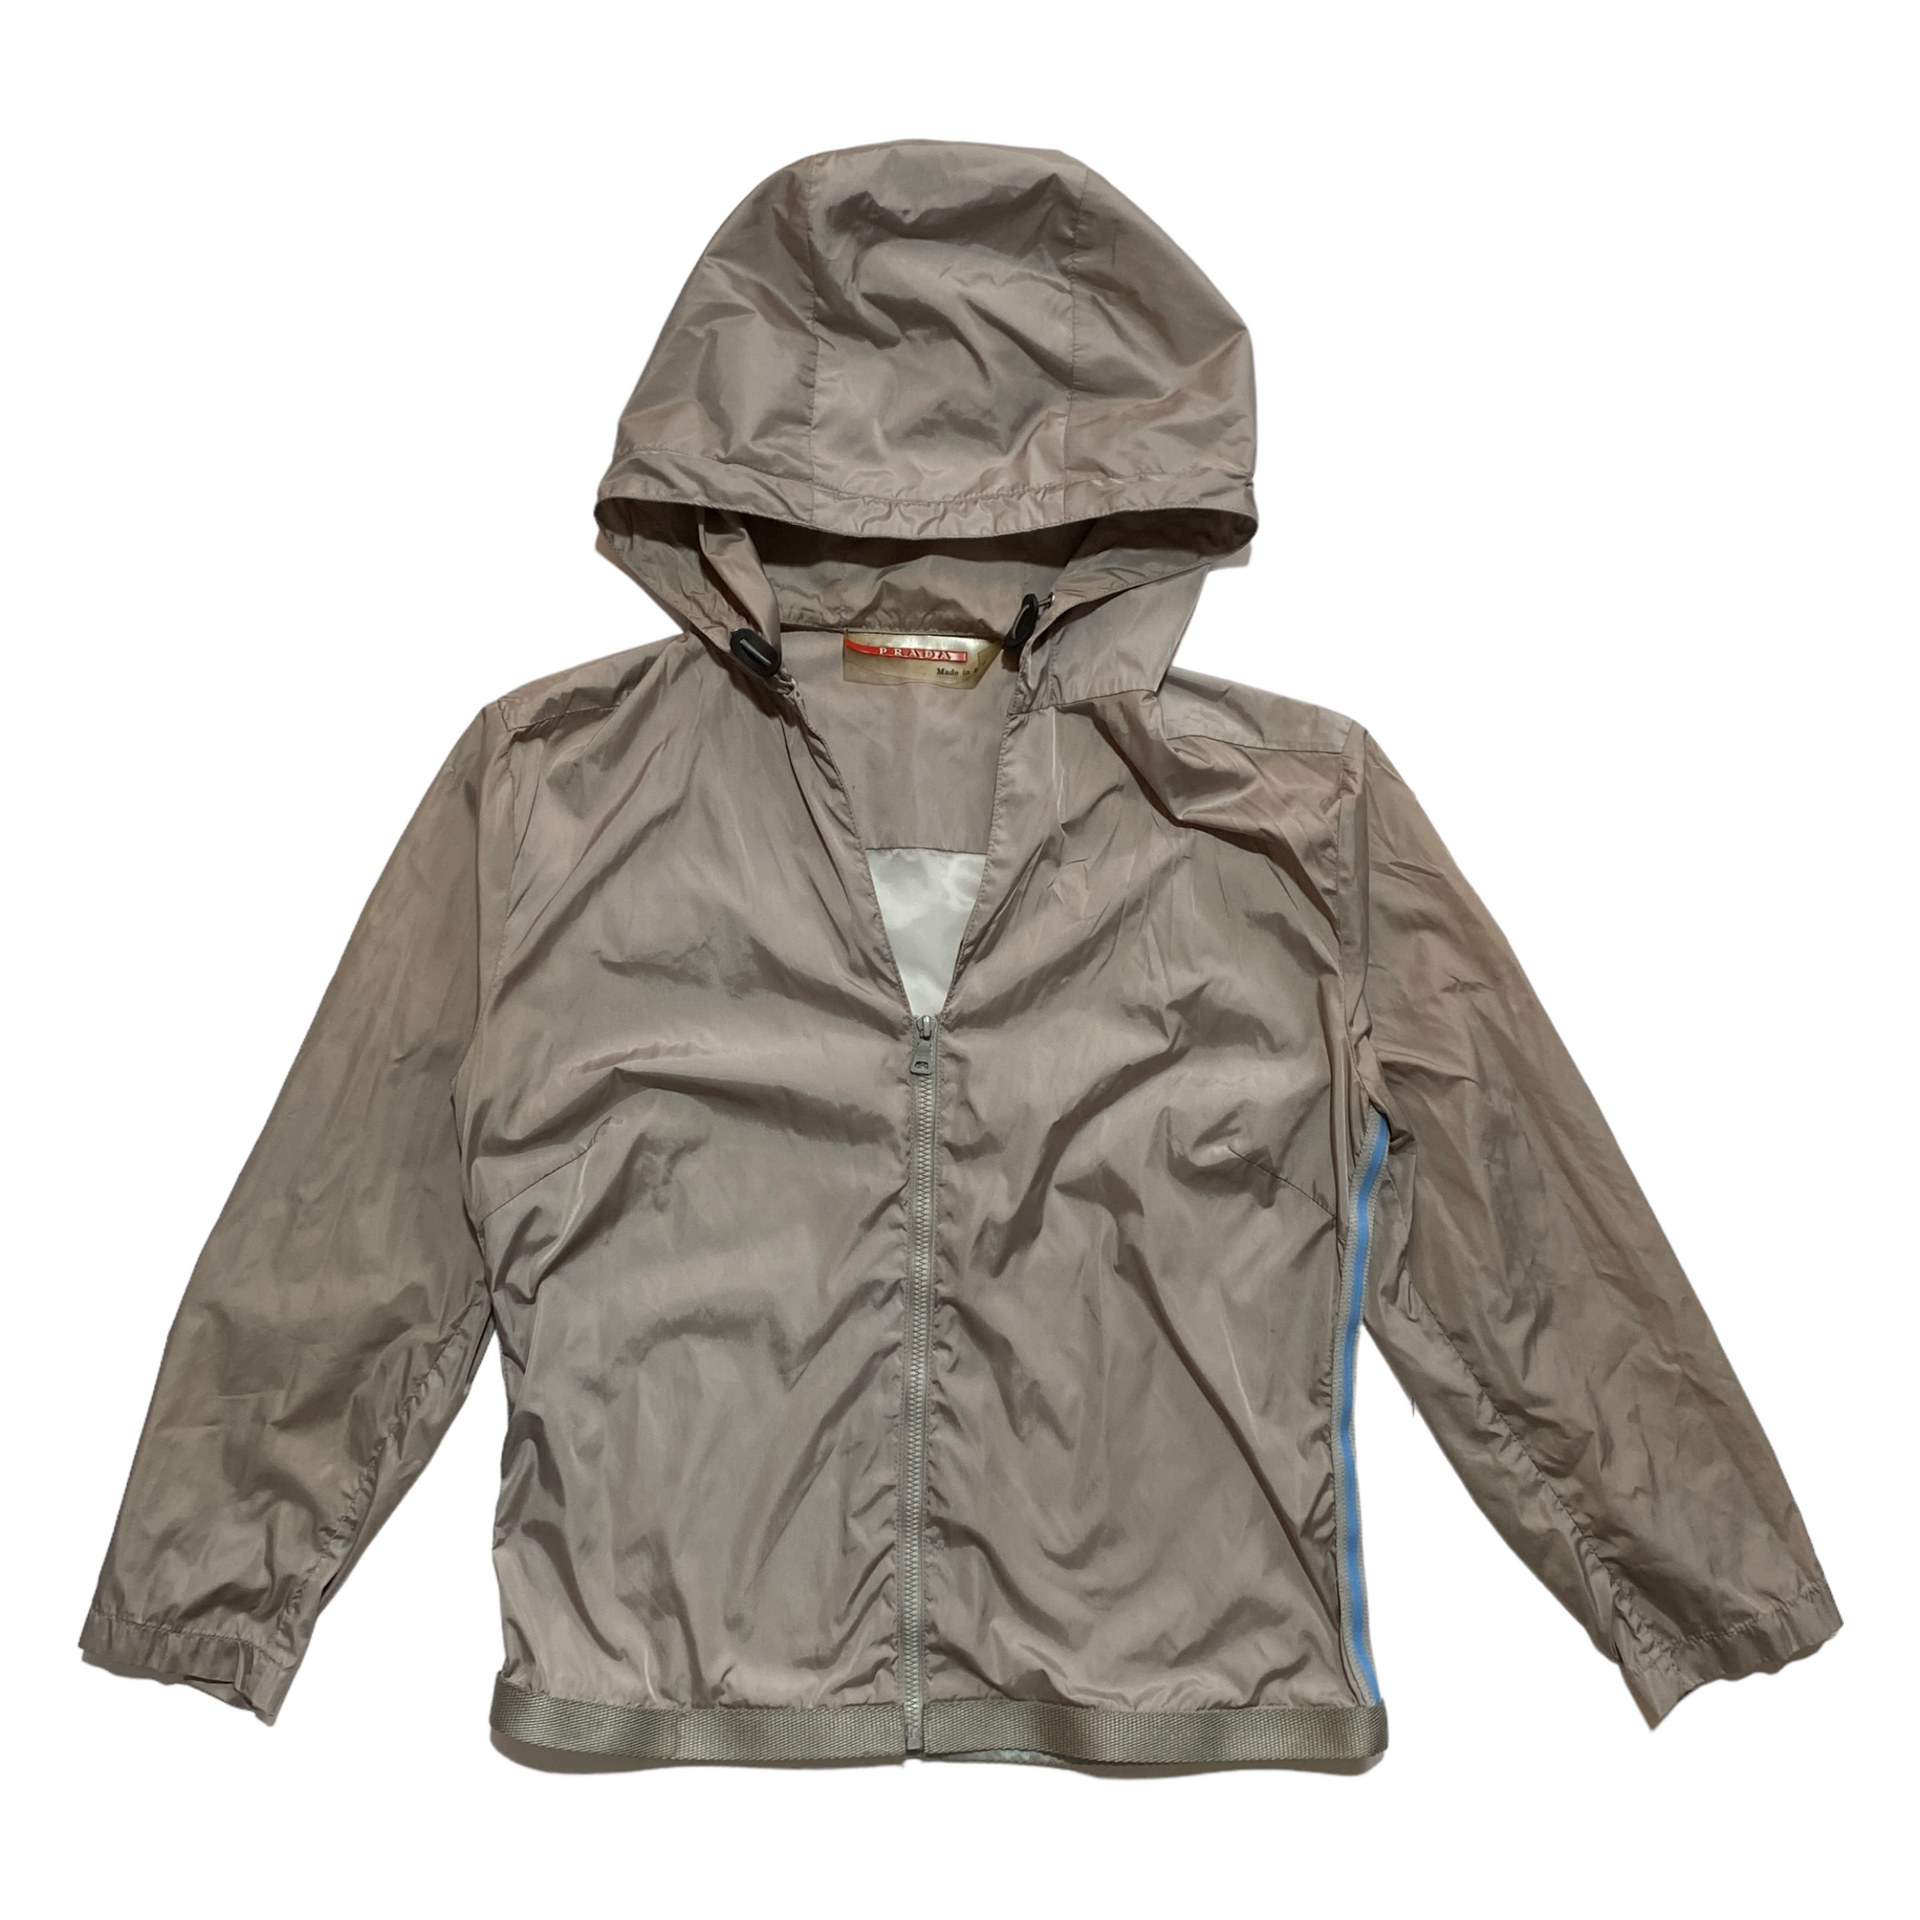 S/S 2000 Prada Sport track jacket (S) – Bintagged